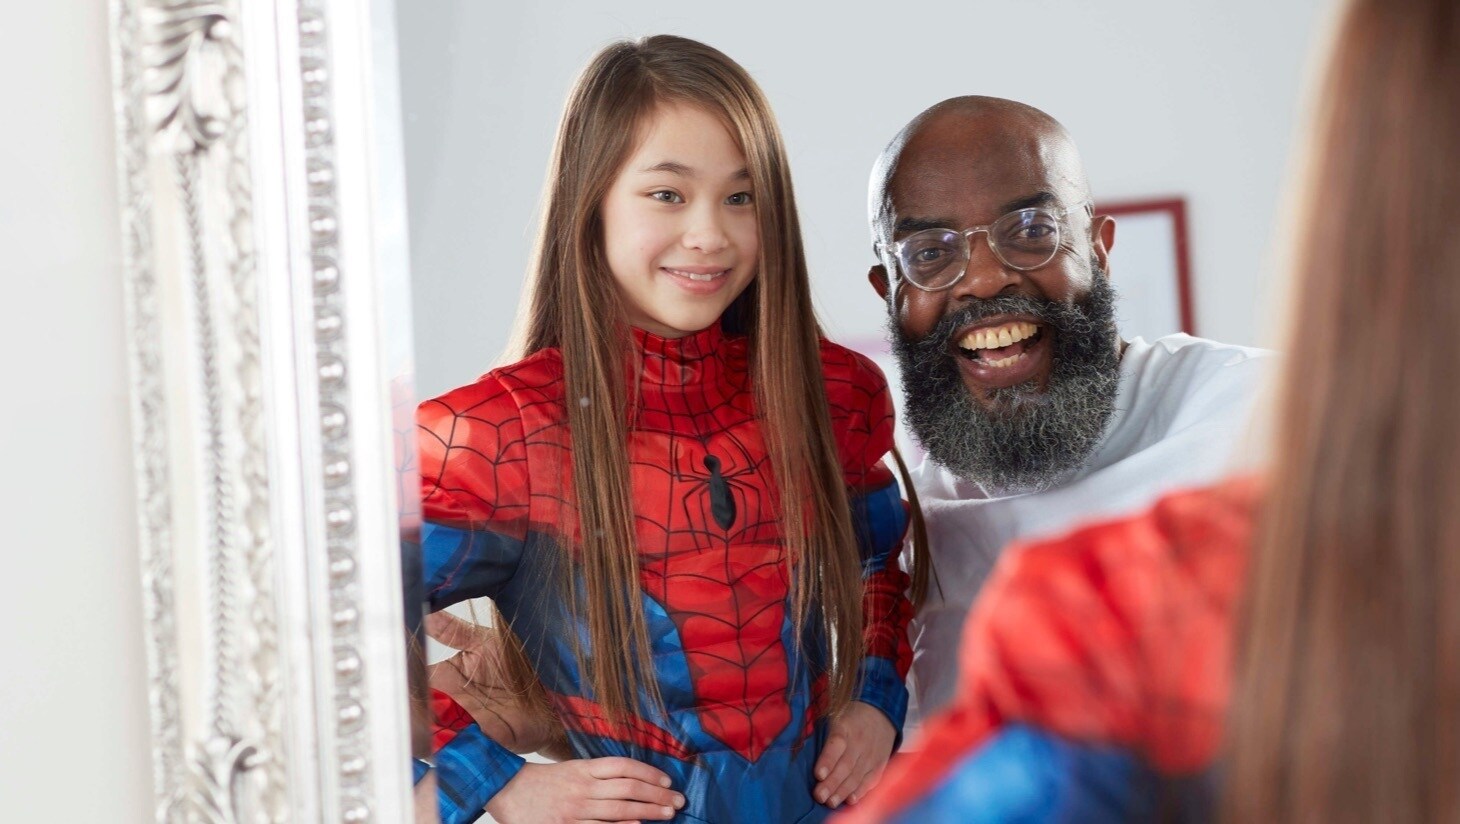 Bambina con il costume di Spiderman shopDisney davanti allo specchio con il padre.